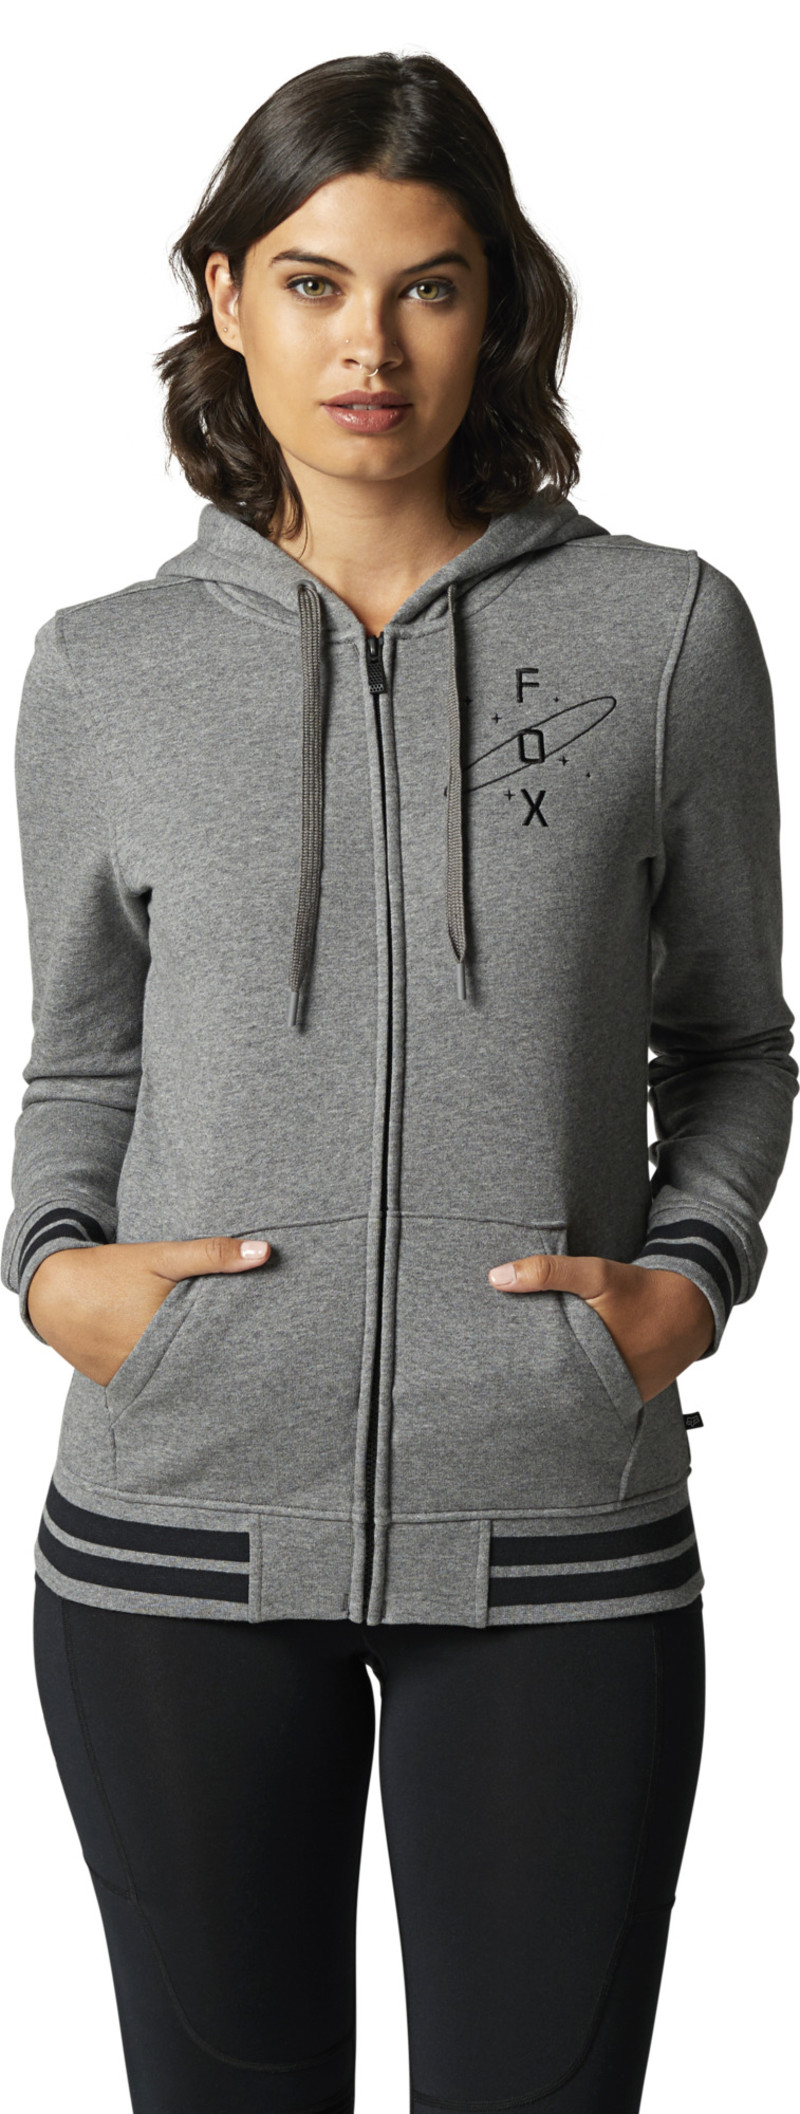 fox racing hoodies  orbital zip fleece hoodies - casual